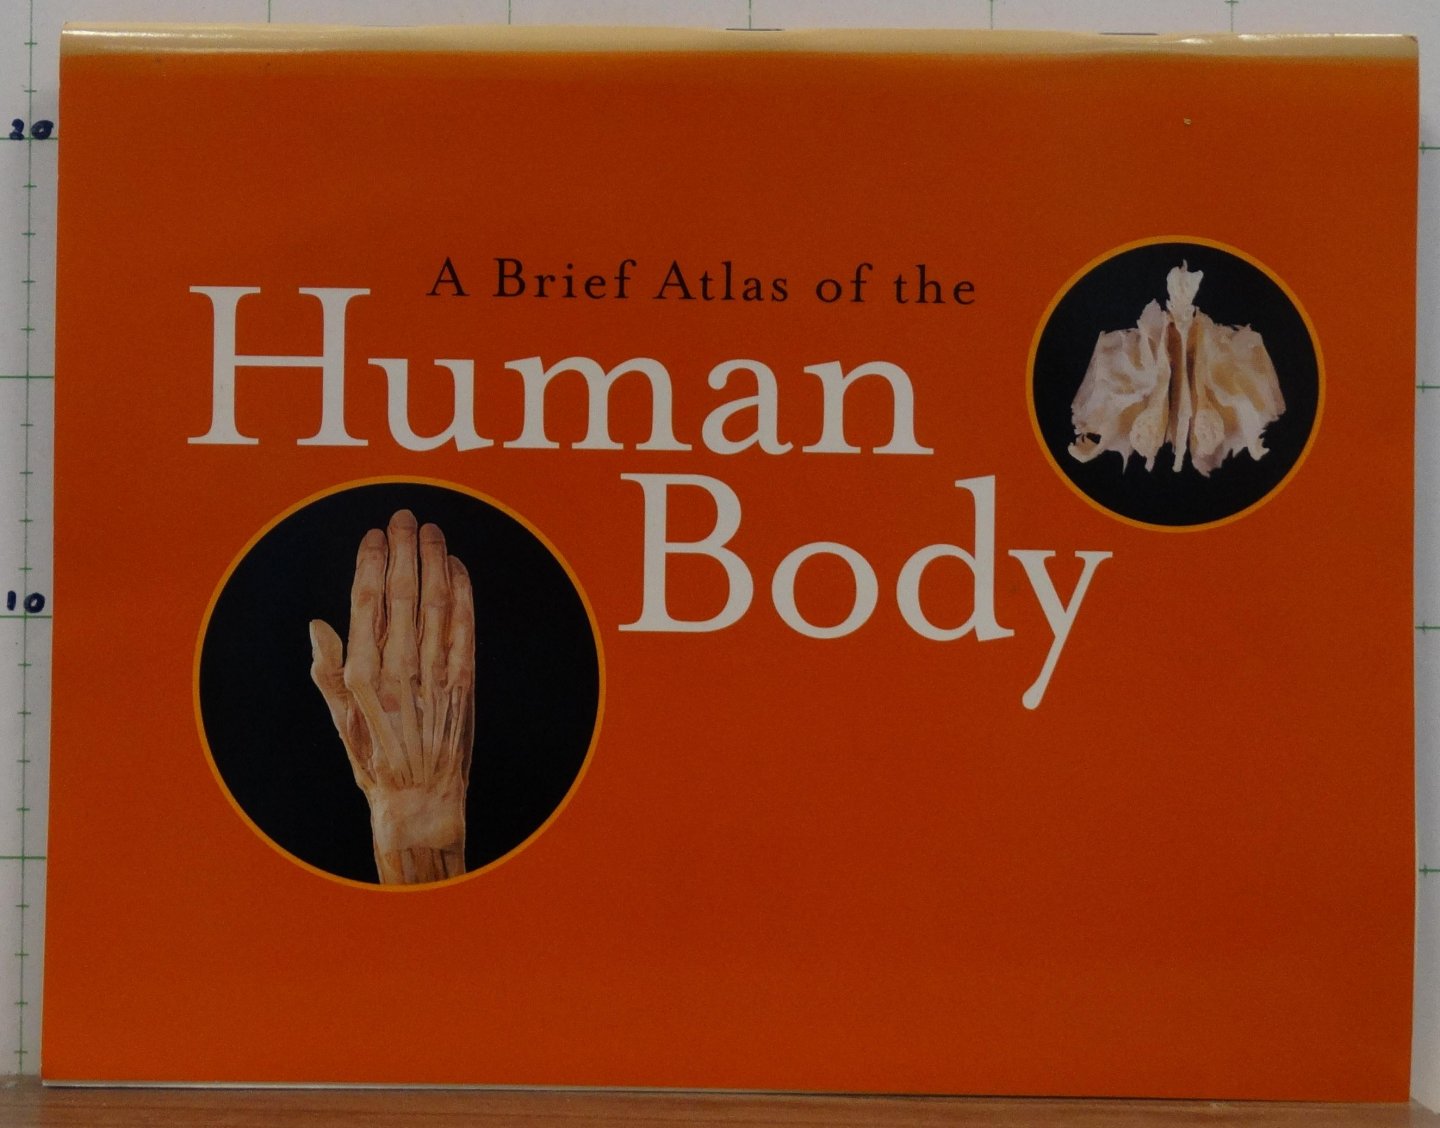 Hutchinson, Matt - Mallatt, Jon - Marieb, Elaine N. - Hutchings, Ralph T. (foto's) - a brief atlas of the Human Body